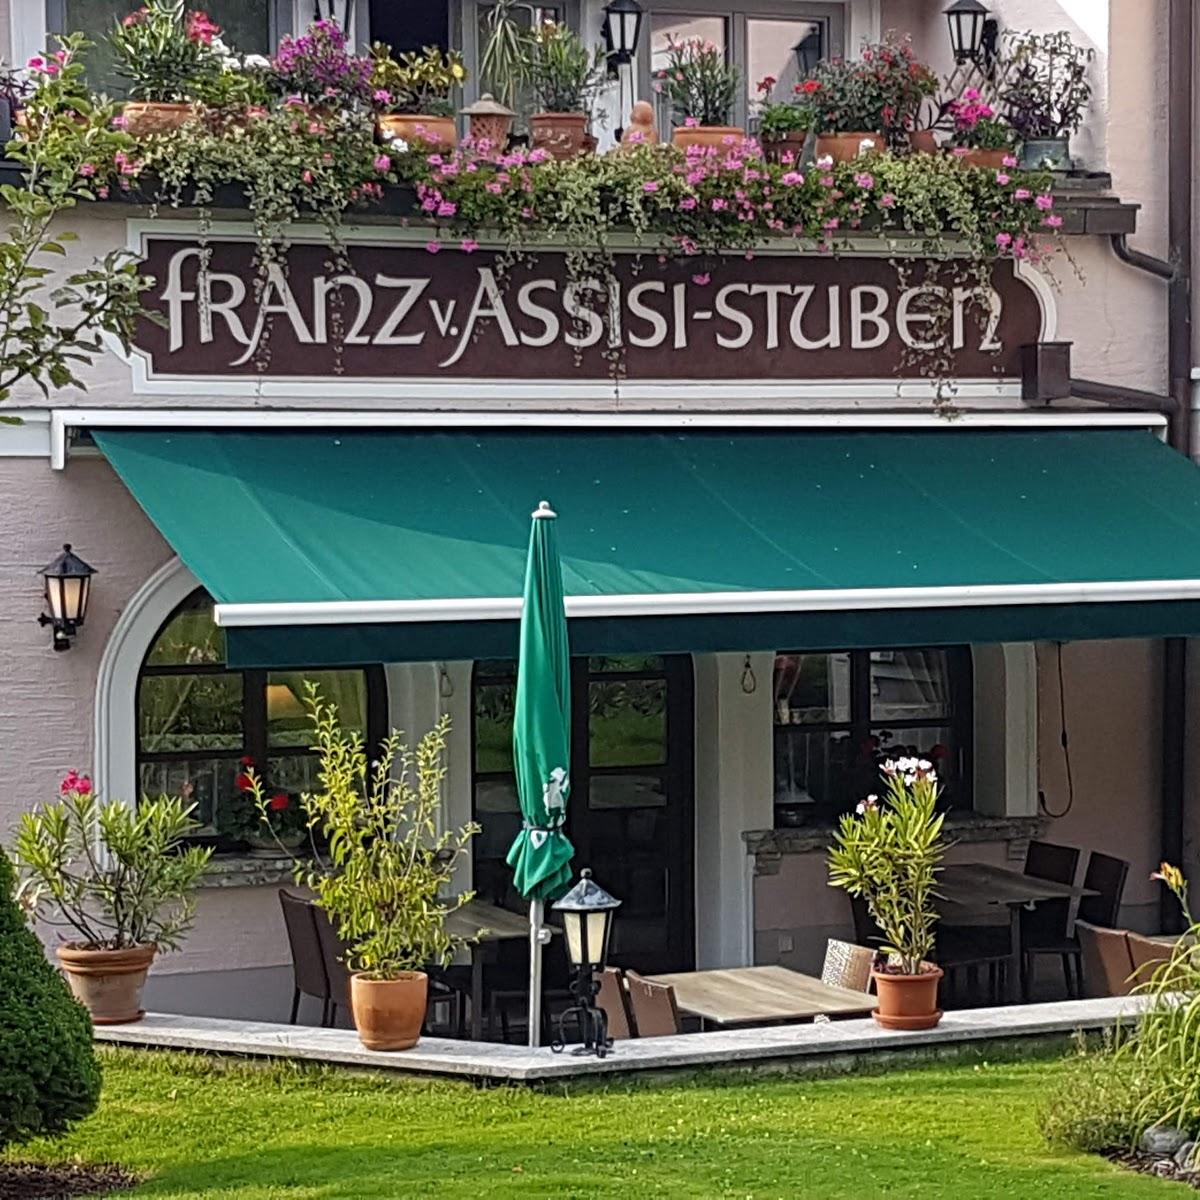 Restaurant "Franz v Assisi Stuben" in Großgmain